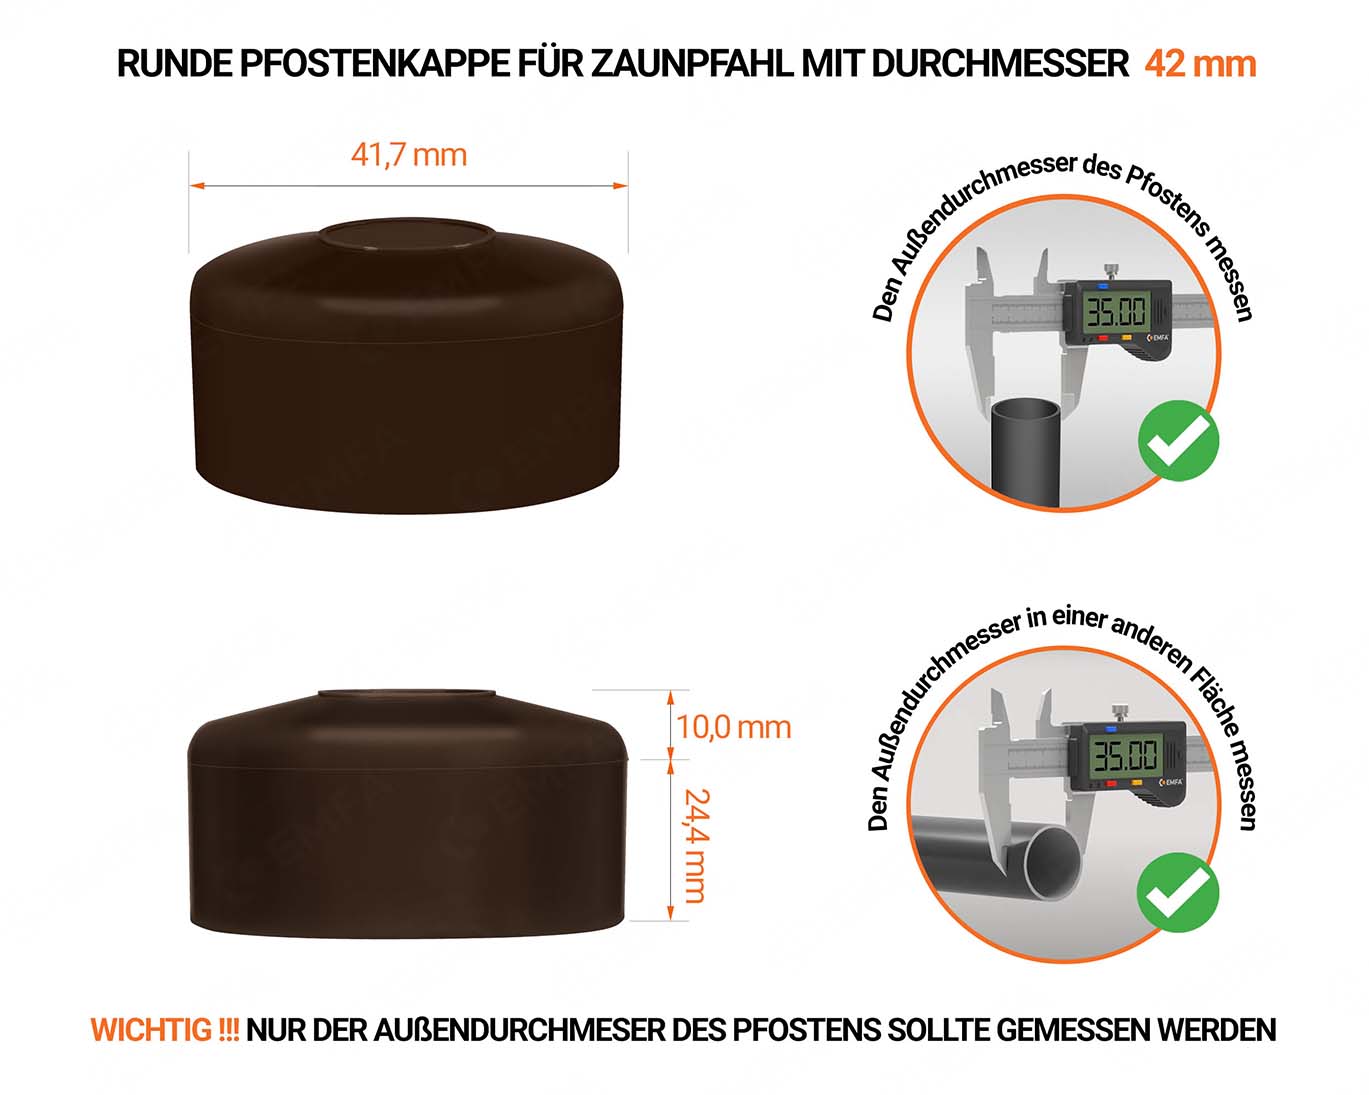 Braune Pfostenkappen rund für Pfostendurchmesser  42 mm mit technischen Abmessungen und Anleitung für korrekte Messung